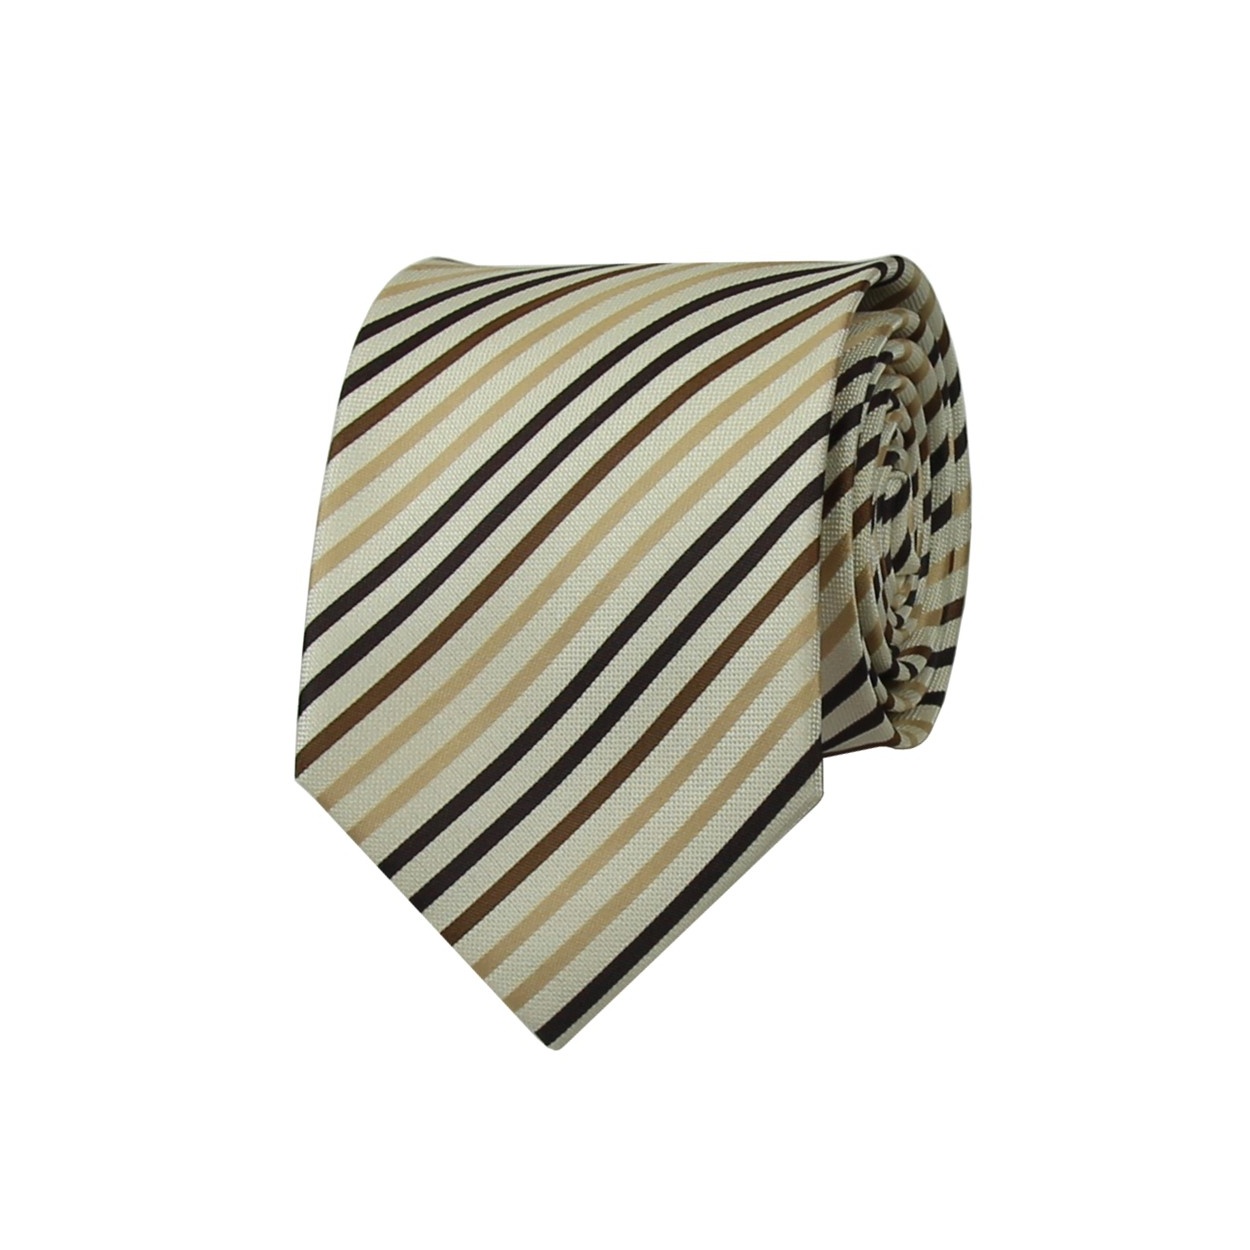 Béžová pánská kravata s hnědými proužky